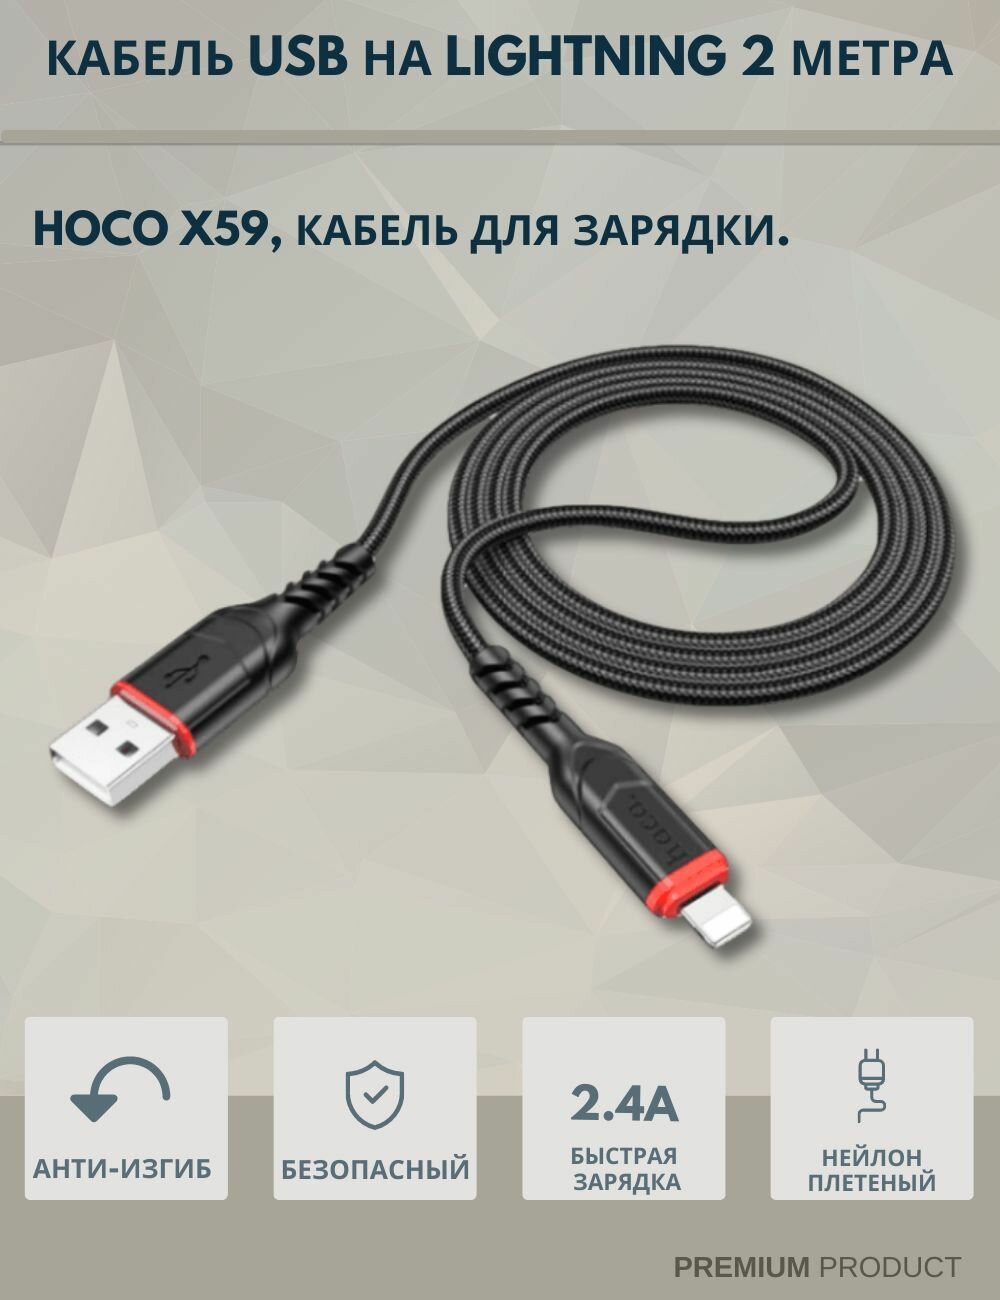 Кабель Type-C - USB для быстрой зарядки hoco X59, 2 метра, черный / Провод type-c хоко, кабель для зарядки type c / Шнур, зарядка, usb кабель